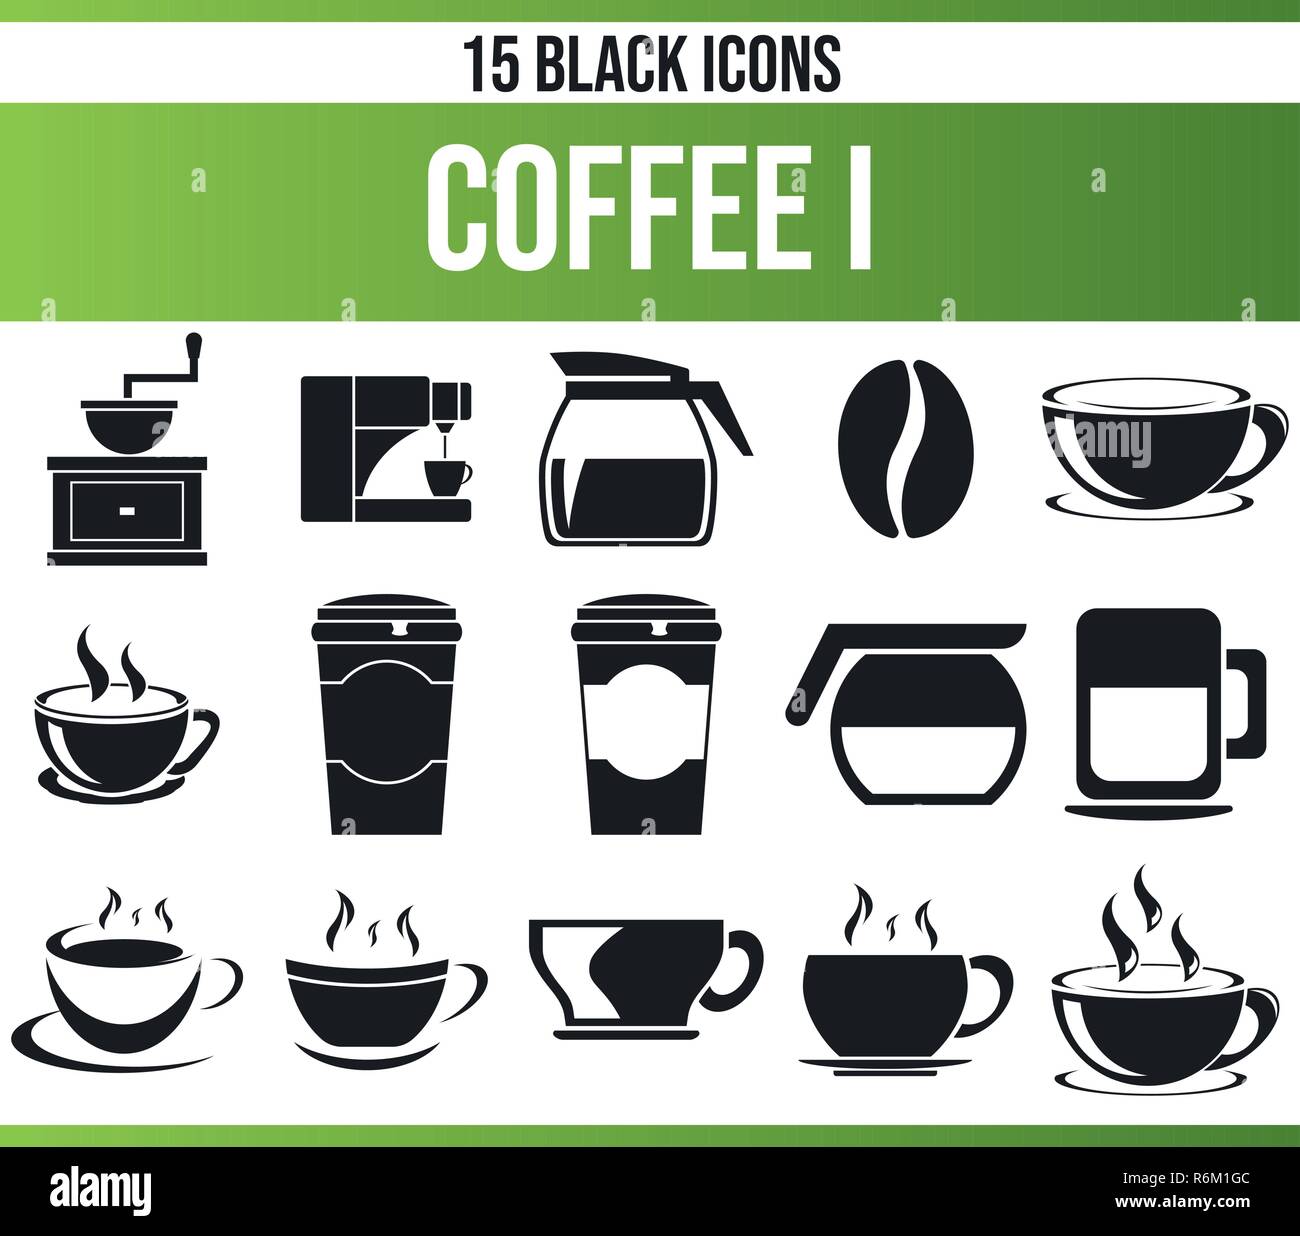 https://c8.alamy.com/compes/r6m1gc/pictogramas-negros-iconos-en-un-tema-de-cafe-este-conjunto-de-iconos-es-perfecto-para-gente-creativa-y-disenadores-que-necesitan-cada-aspecto-de-cafe-en-sus-graphi-r6m1gc.jpg